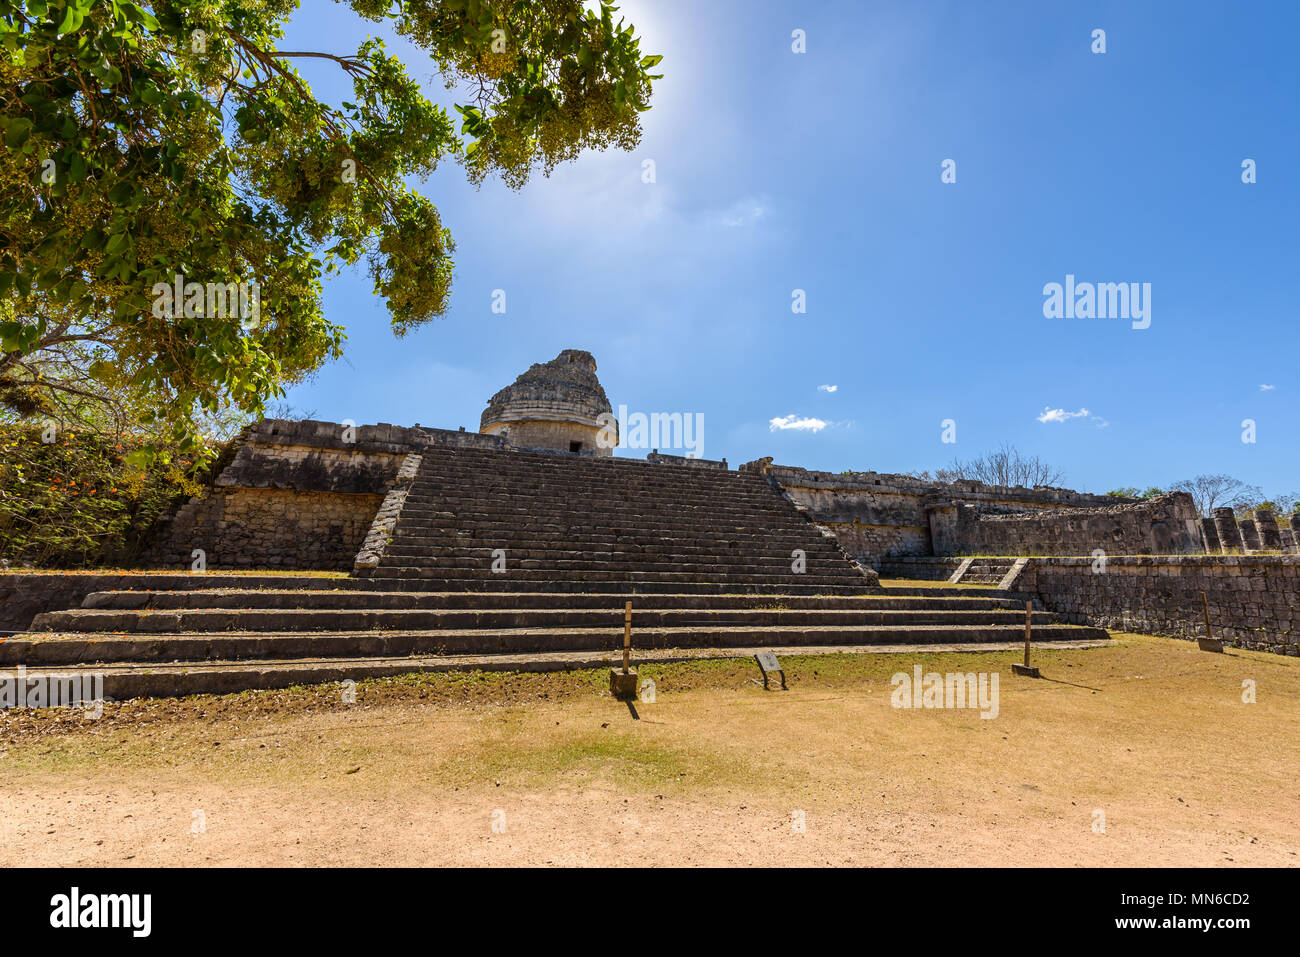 Ruin of Observatory at Chichen Itza, Yucatan, Mexico Stock Photo